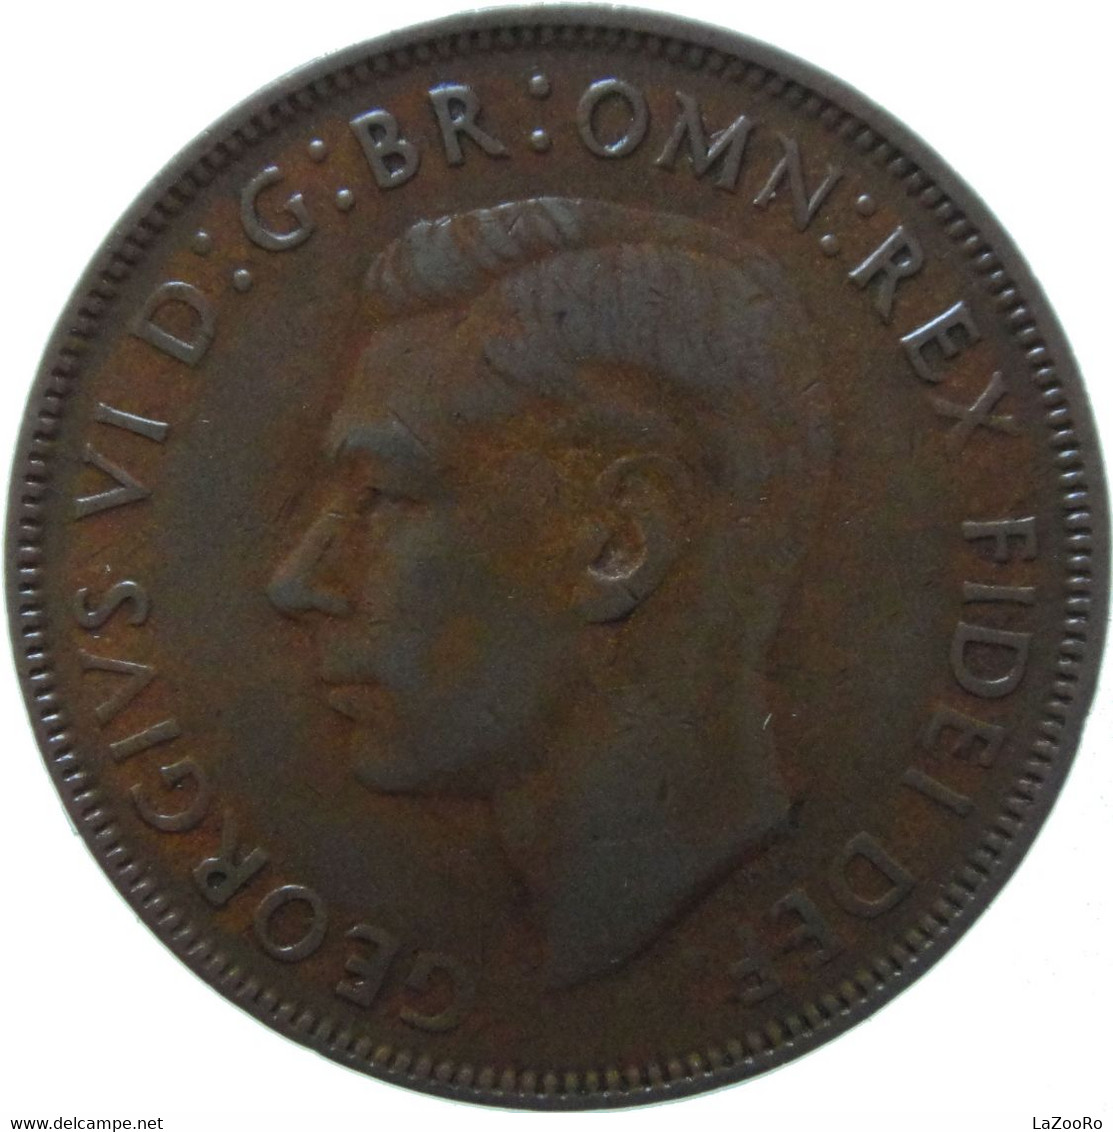 LaZooRo: Australia 1 Penny 1950 XF - Penny